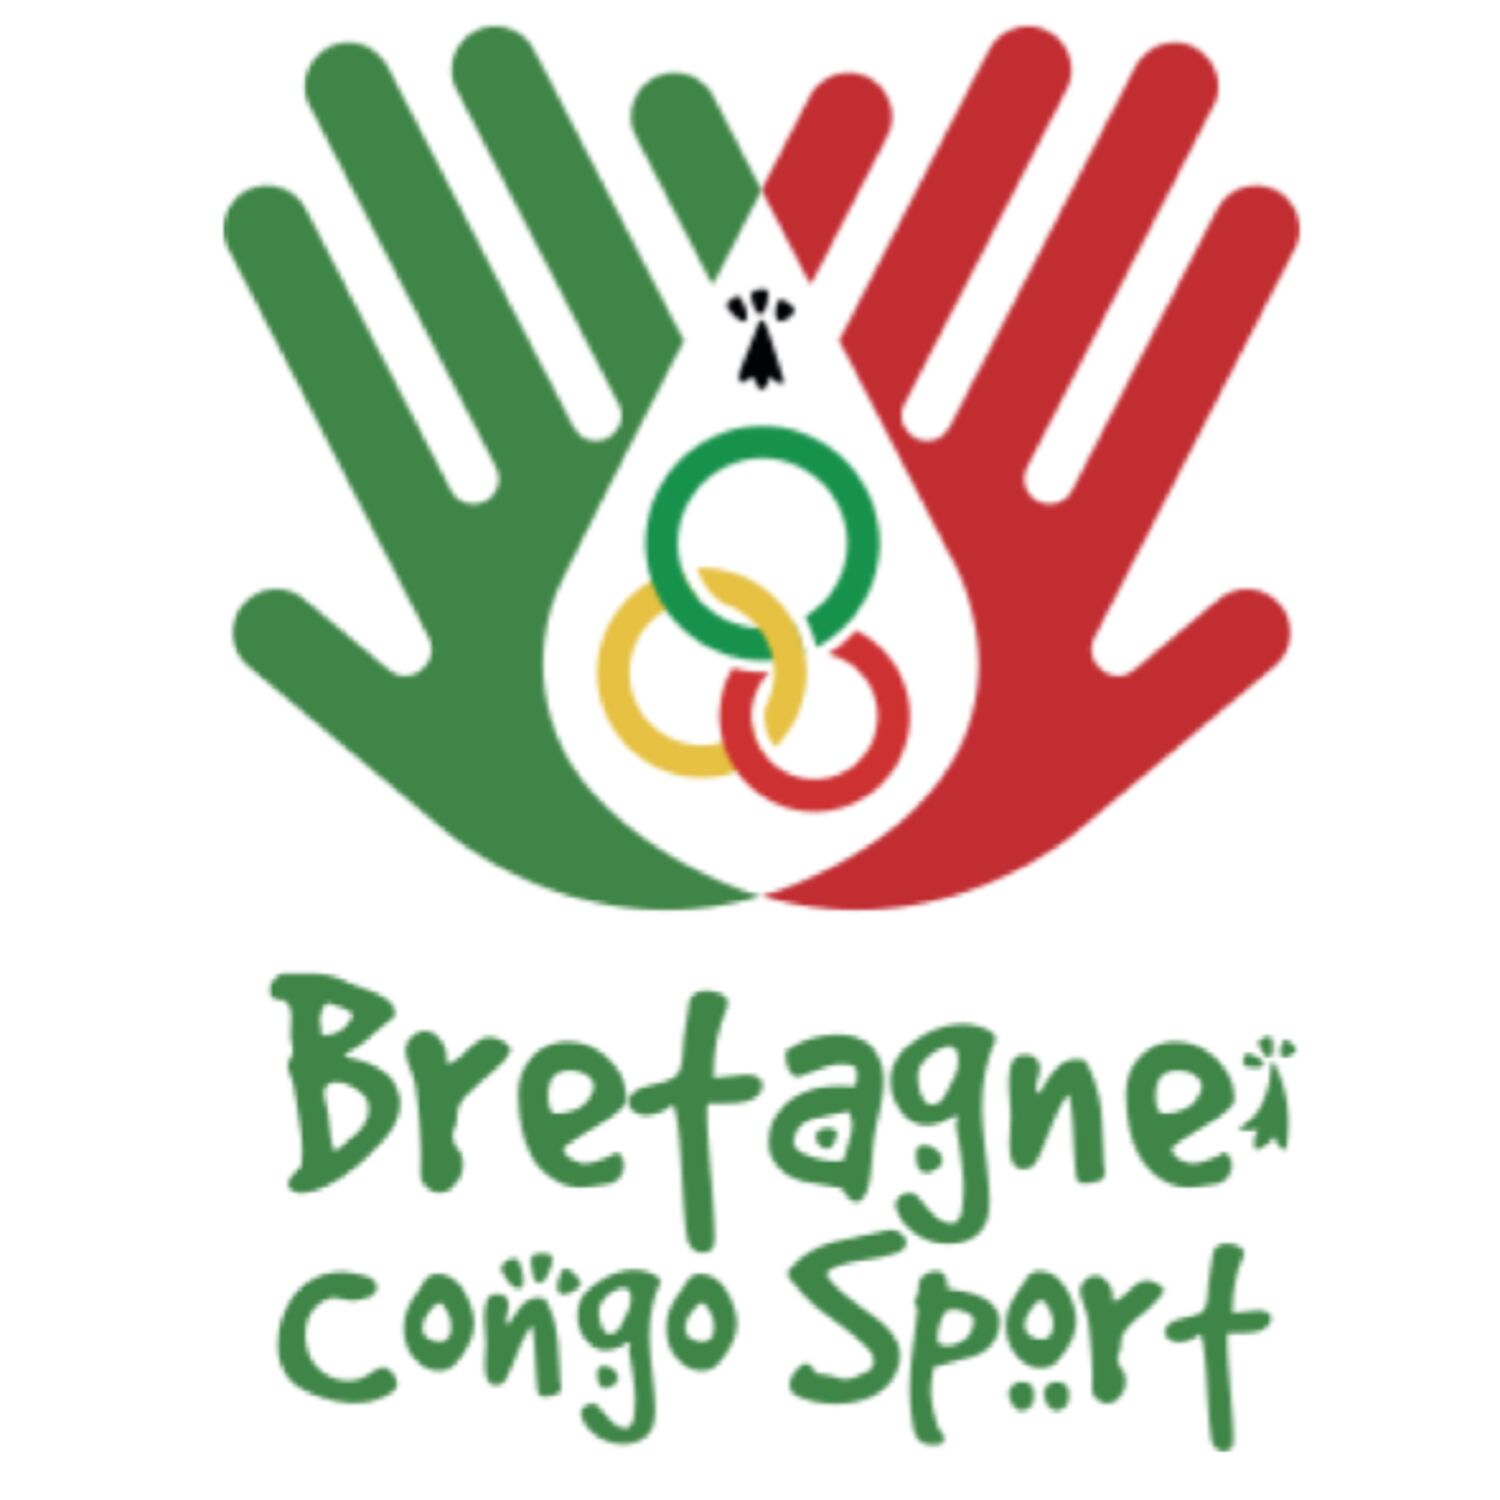 "Bretagne Congo Sport" récolte des fonds pour favoriser la pratique...